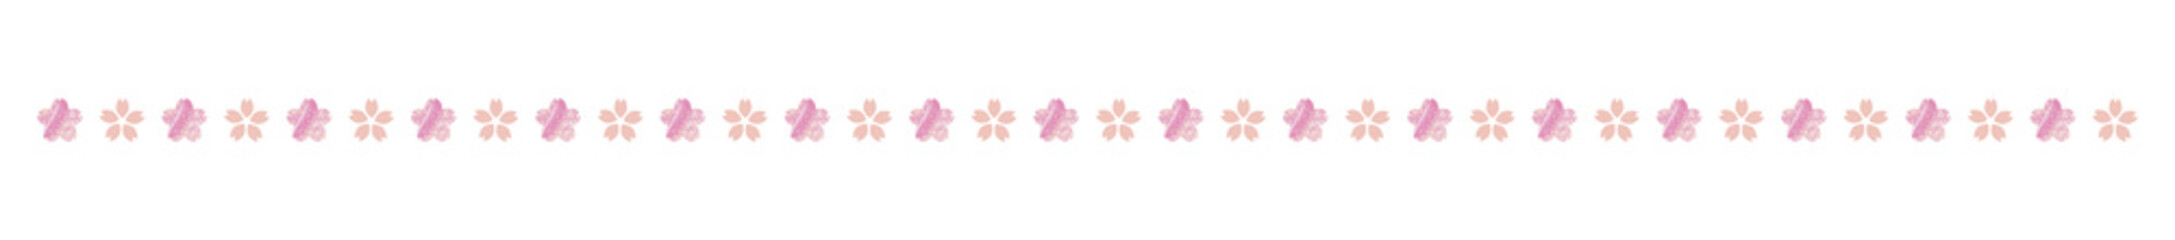 桜の花びら 小花 ライン、装飾、罫線素材 vol.3